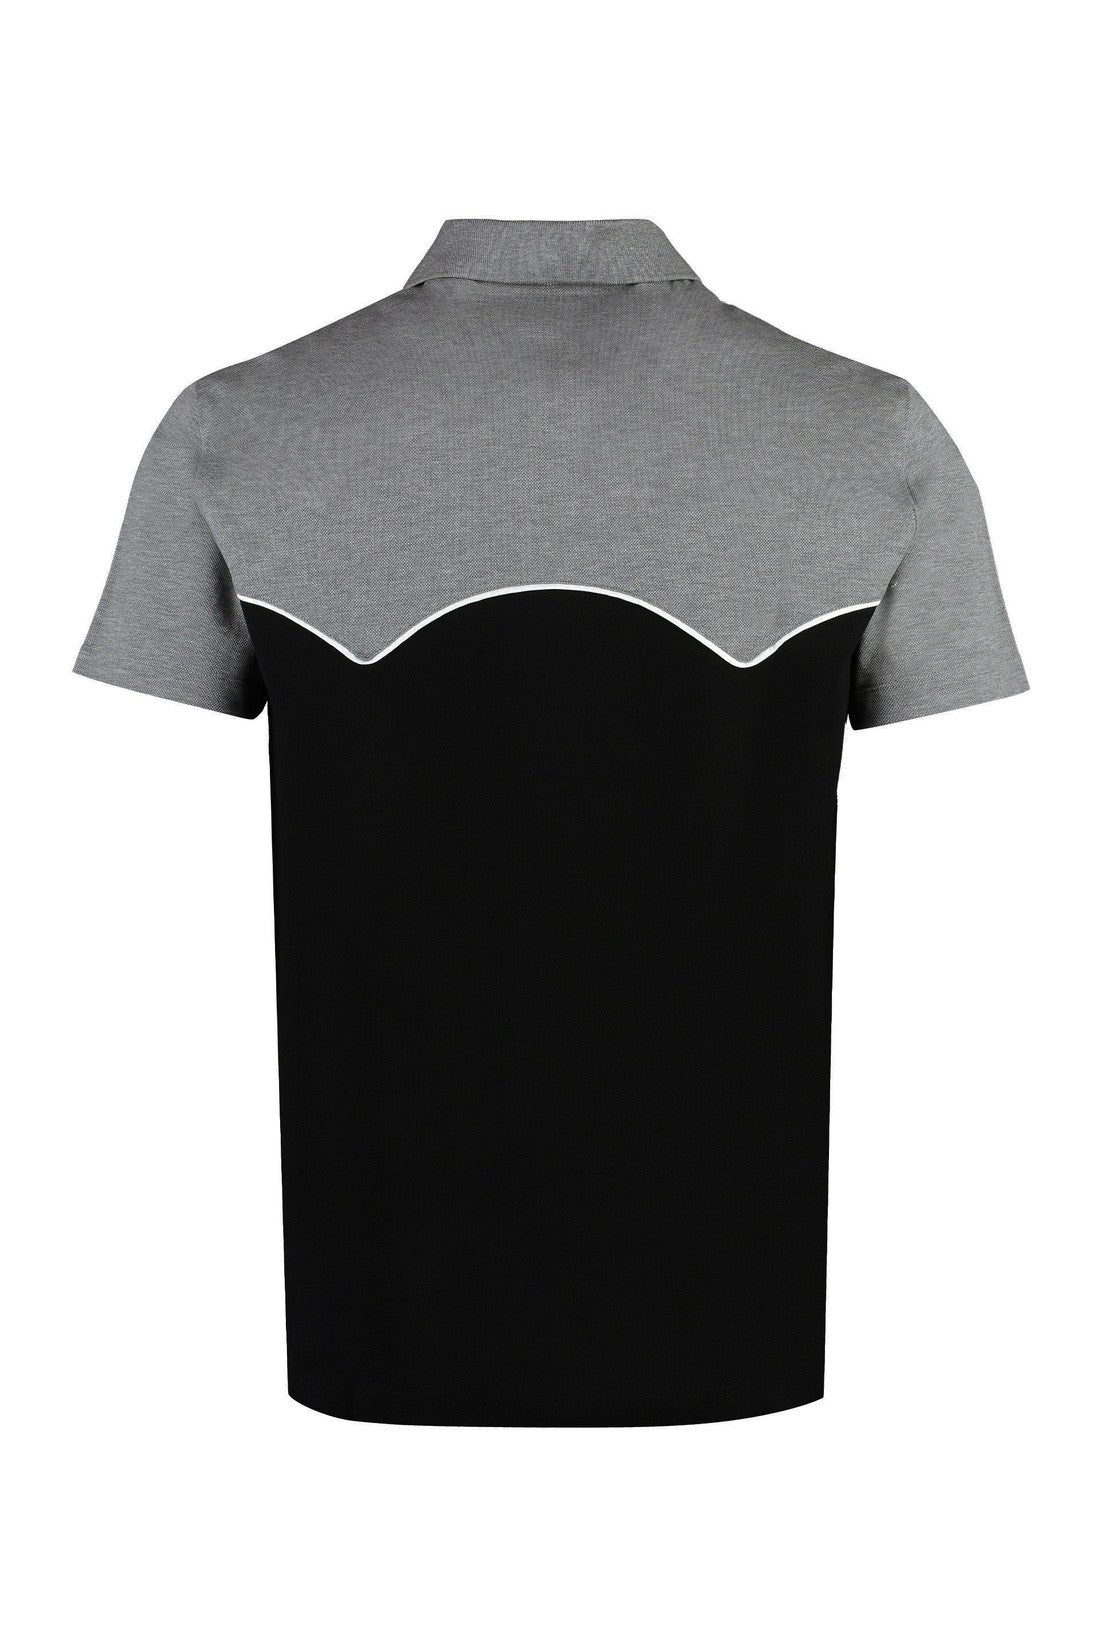 Versace-OUTLET-SALE-Cotton-piqué polo shirt-ARCHIVIST